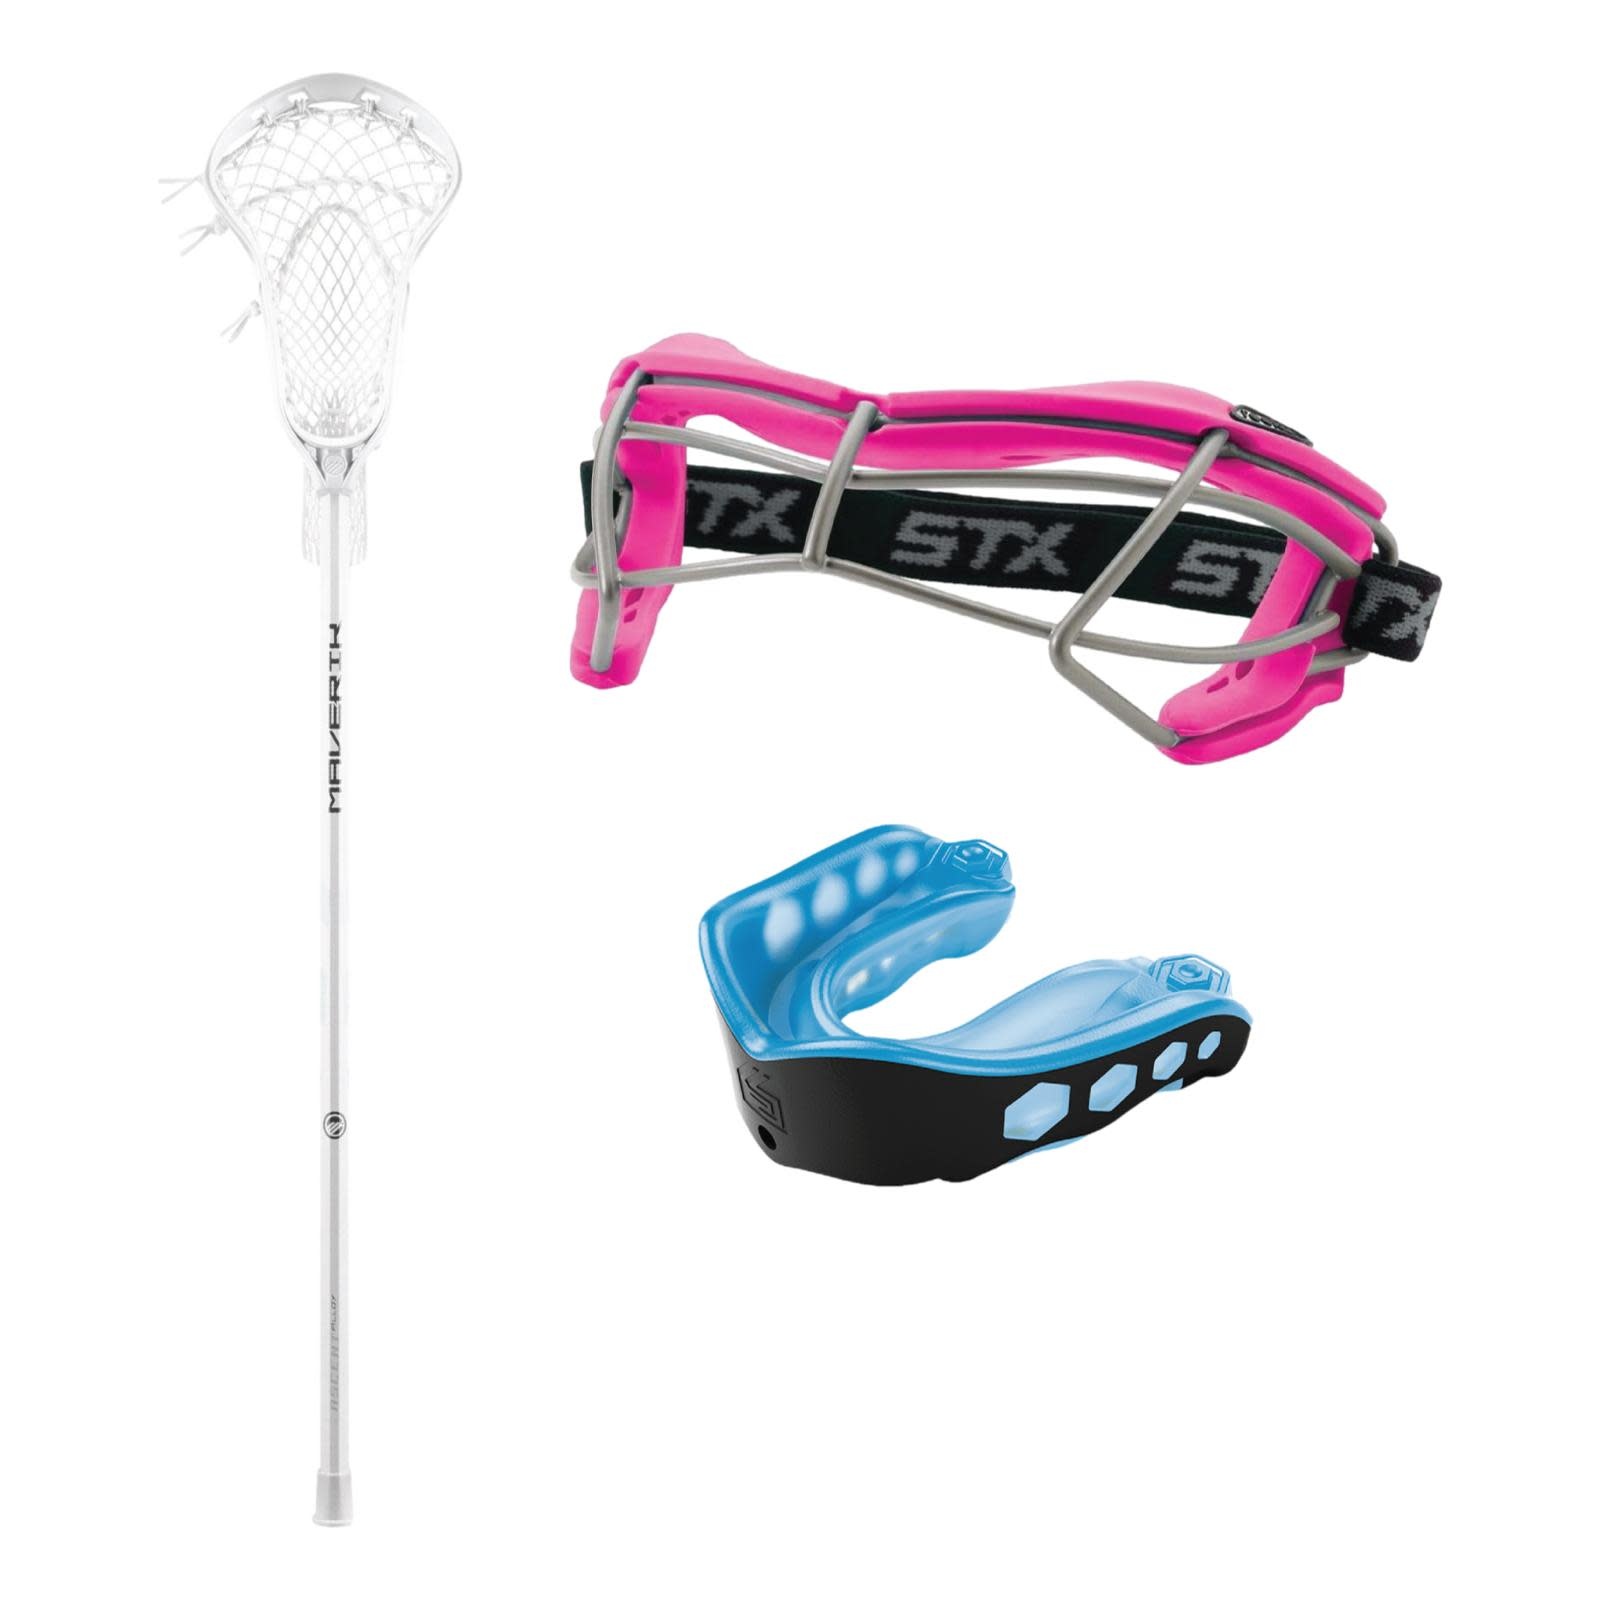 Lacrosse Equipment, Lacrosse Gear, Lacrosse Sticks